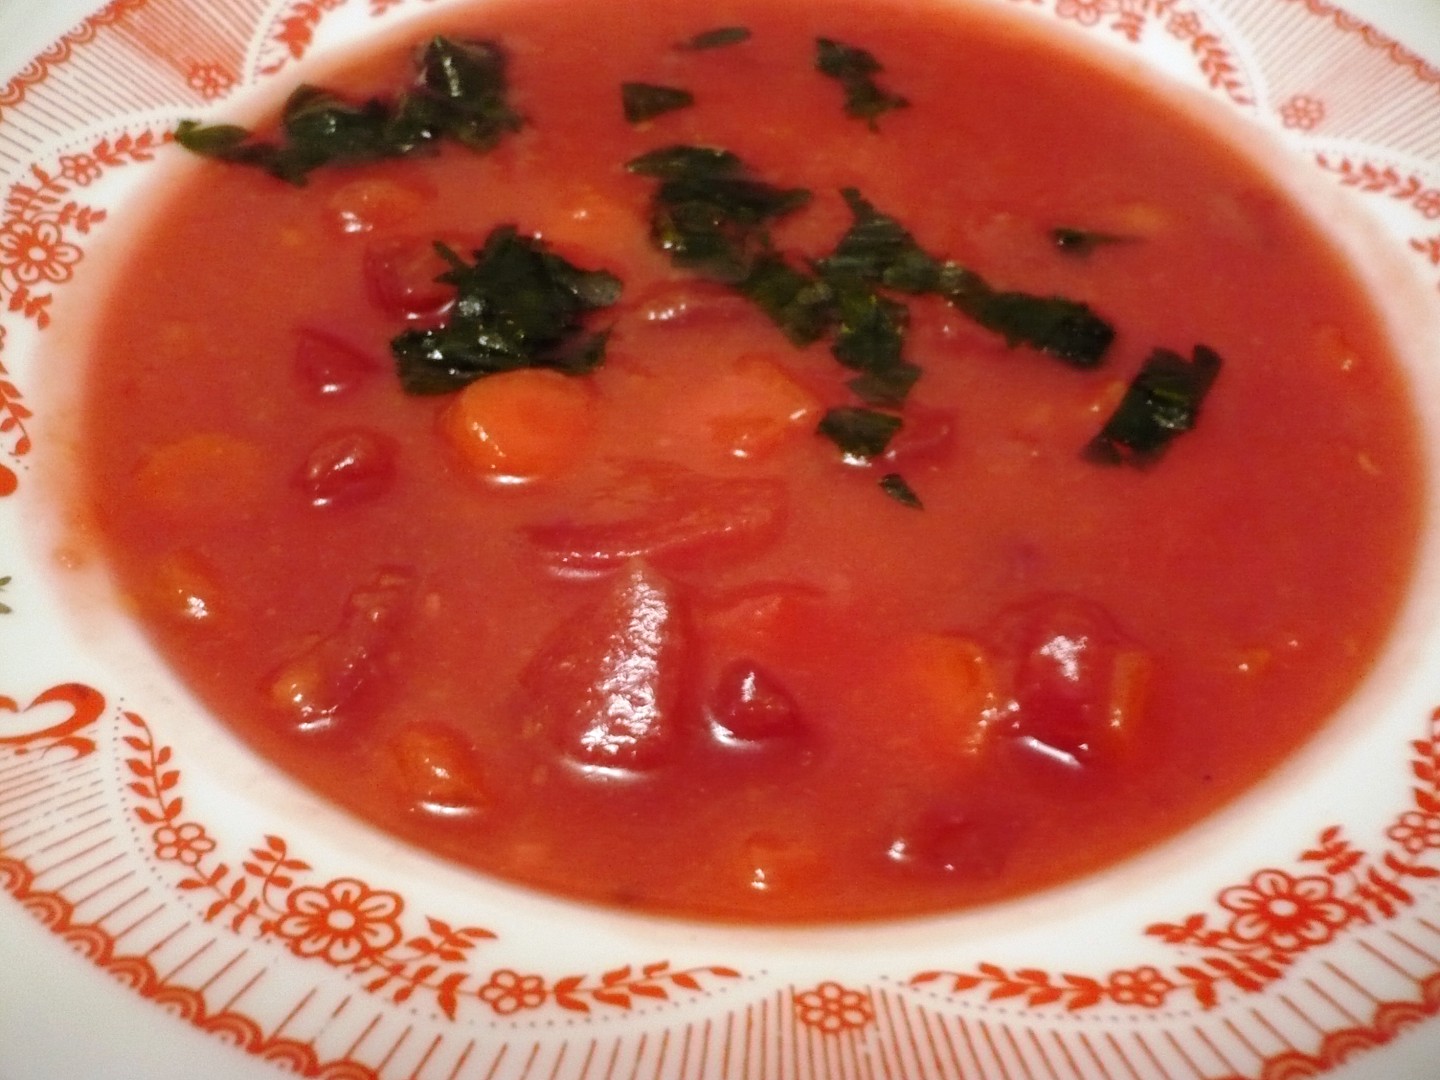 Dýňová polévka s červenou řepou